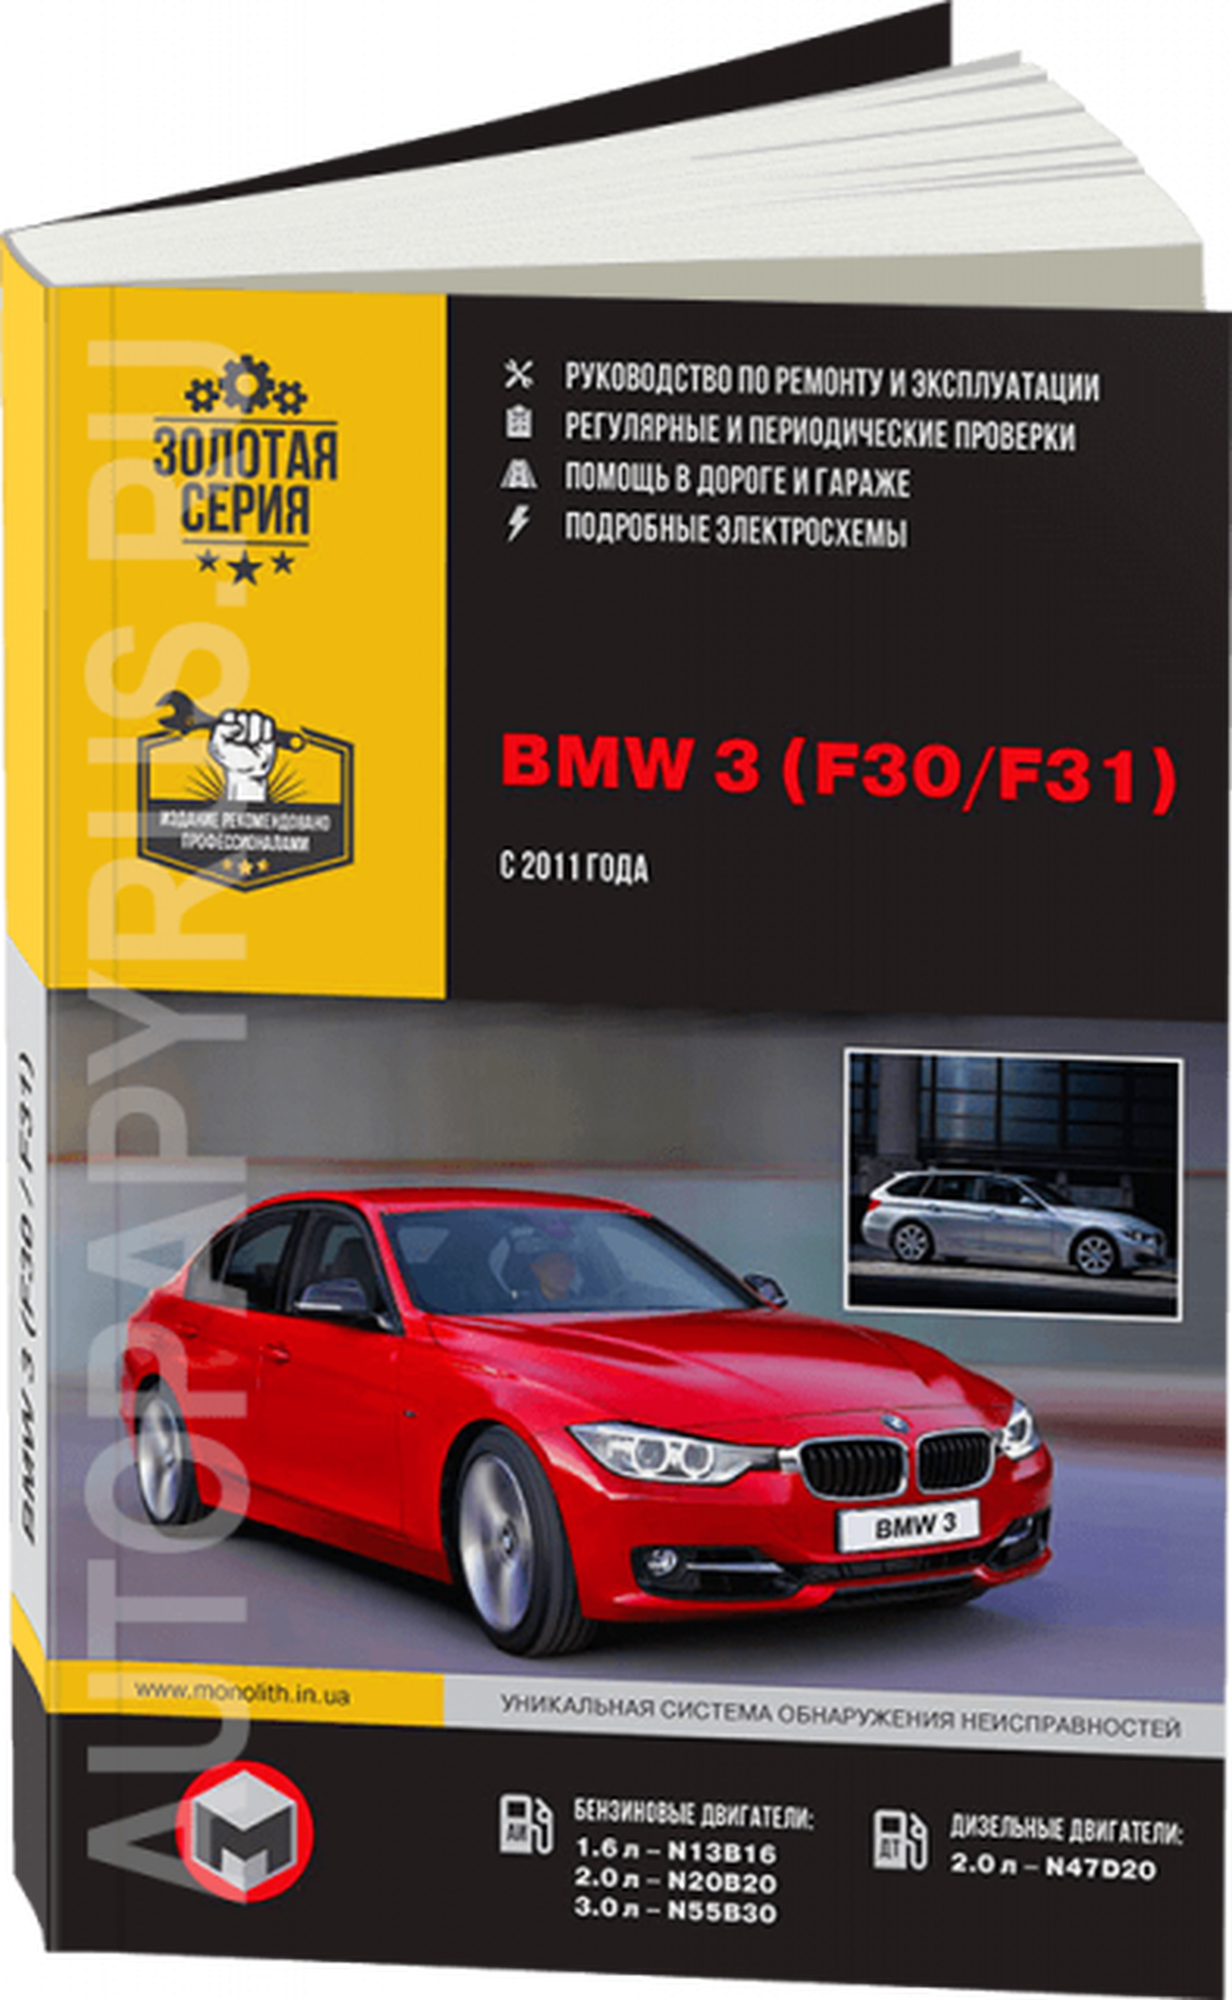 Автокнига: руководство / инструкция по ремонту и эксплуатации BMW 3 (БМВ 3) (F30 / F31) бензин / дизель c 2011 года выпуска, 978-617-537-199-2, издательство Монолит